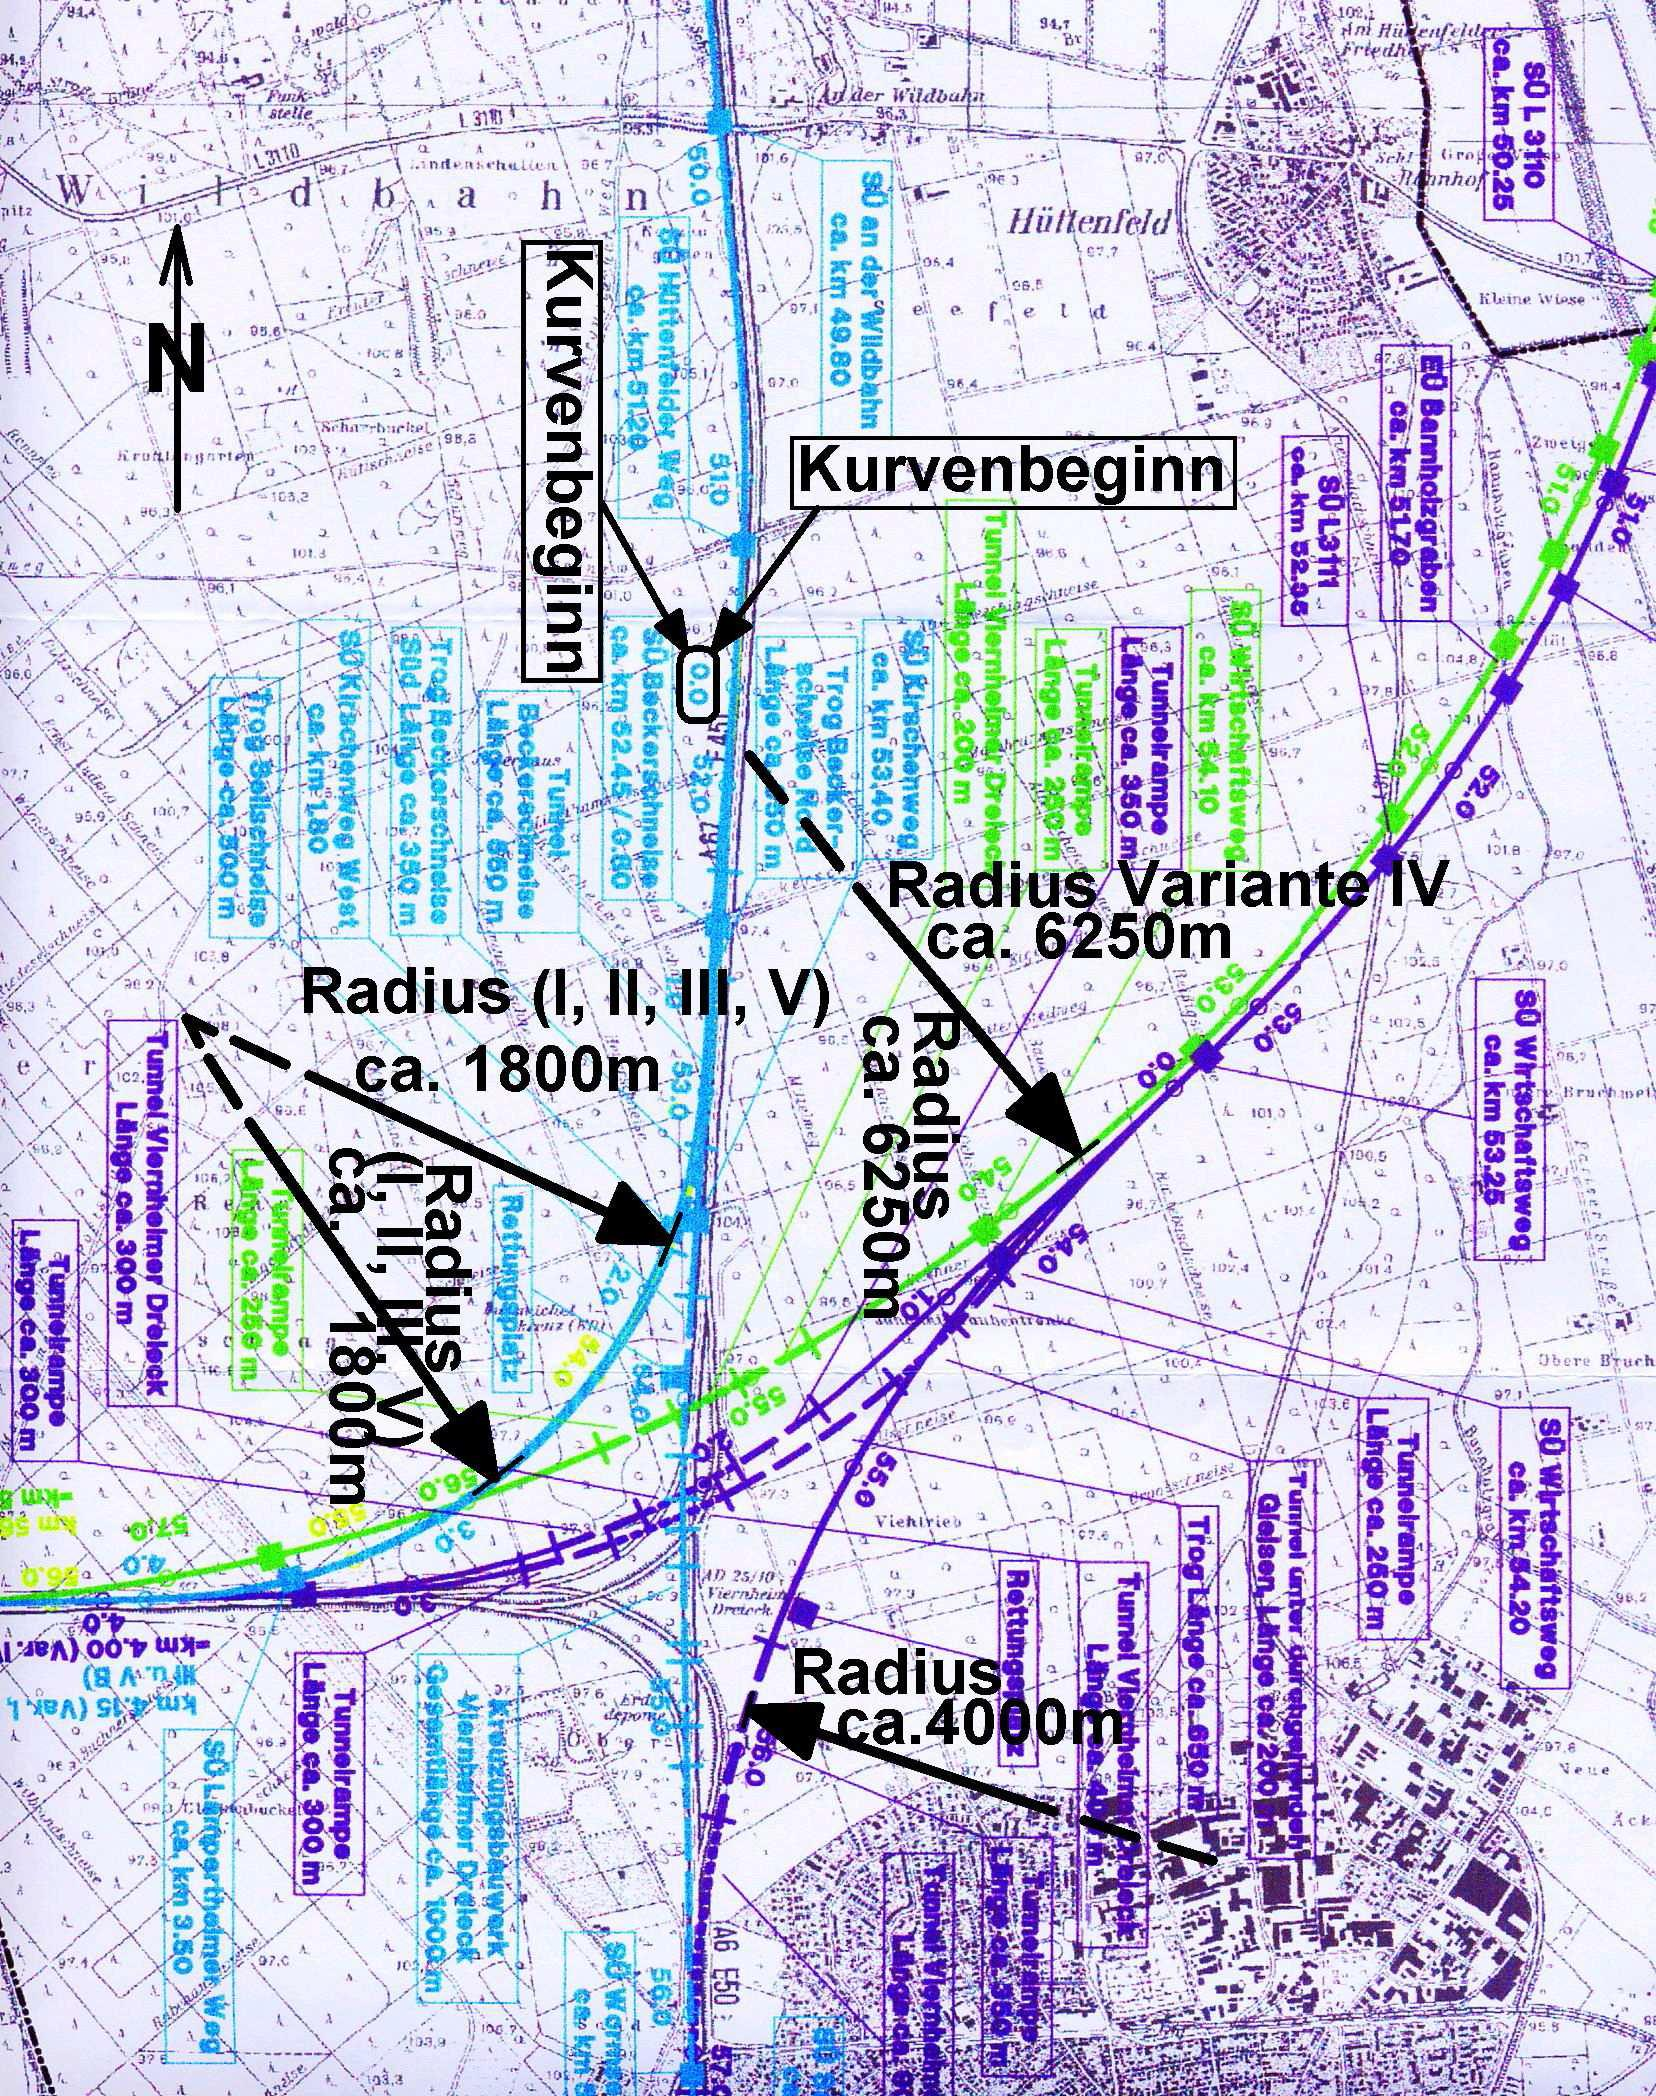 Ein anderer als A5-Variante in den zurückliegenden Jahren genannter Vorschlag mit einer Querung nördlich von Bensheim zu A67 ist in keinster Weise sinnvoll, weil dann die oben genannten Vorteile